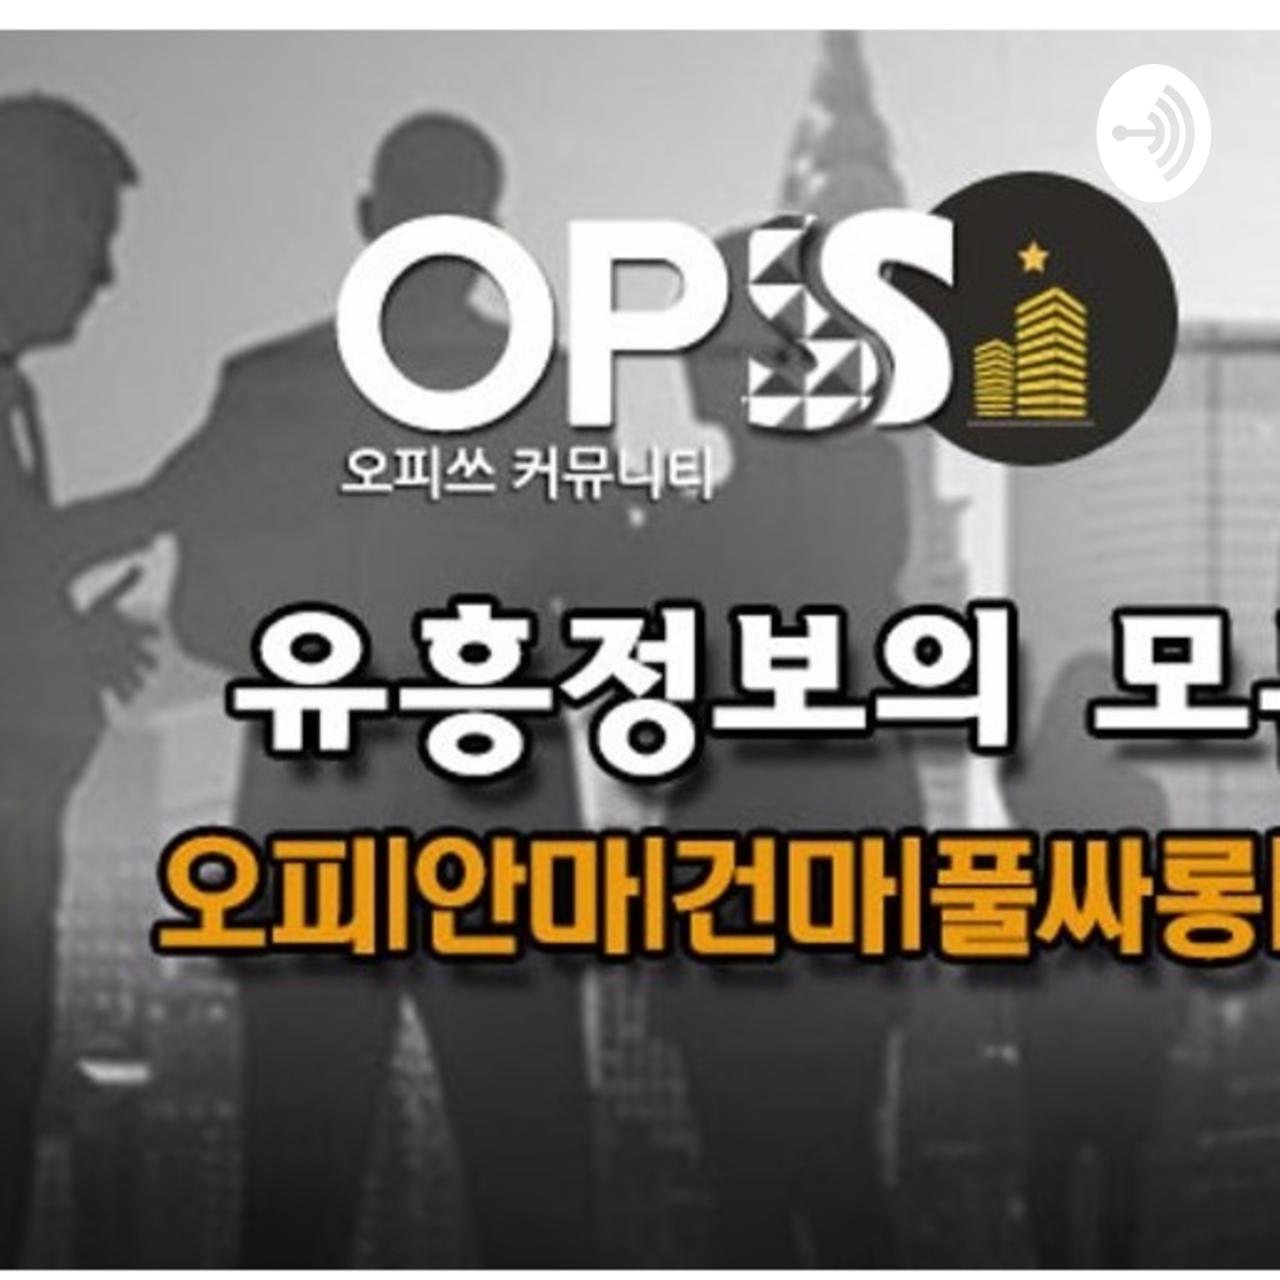 일산건마ア오피쓰후기『Opss』『9』『닷컴』🎿일산풀싸롱Μ일산오피